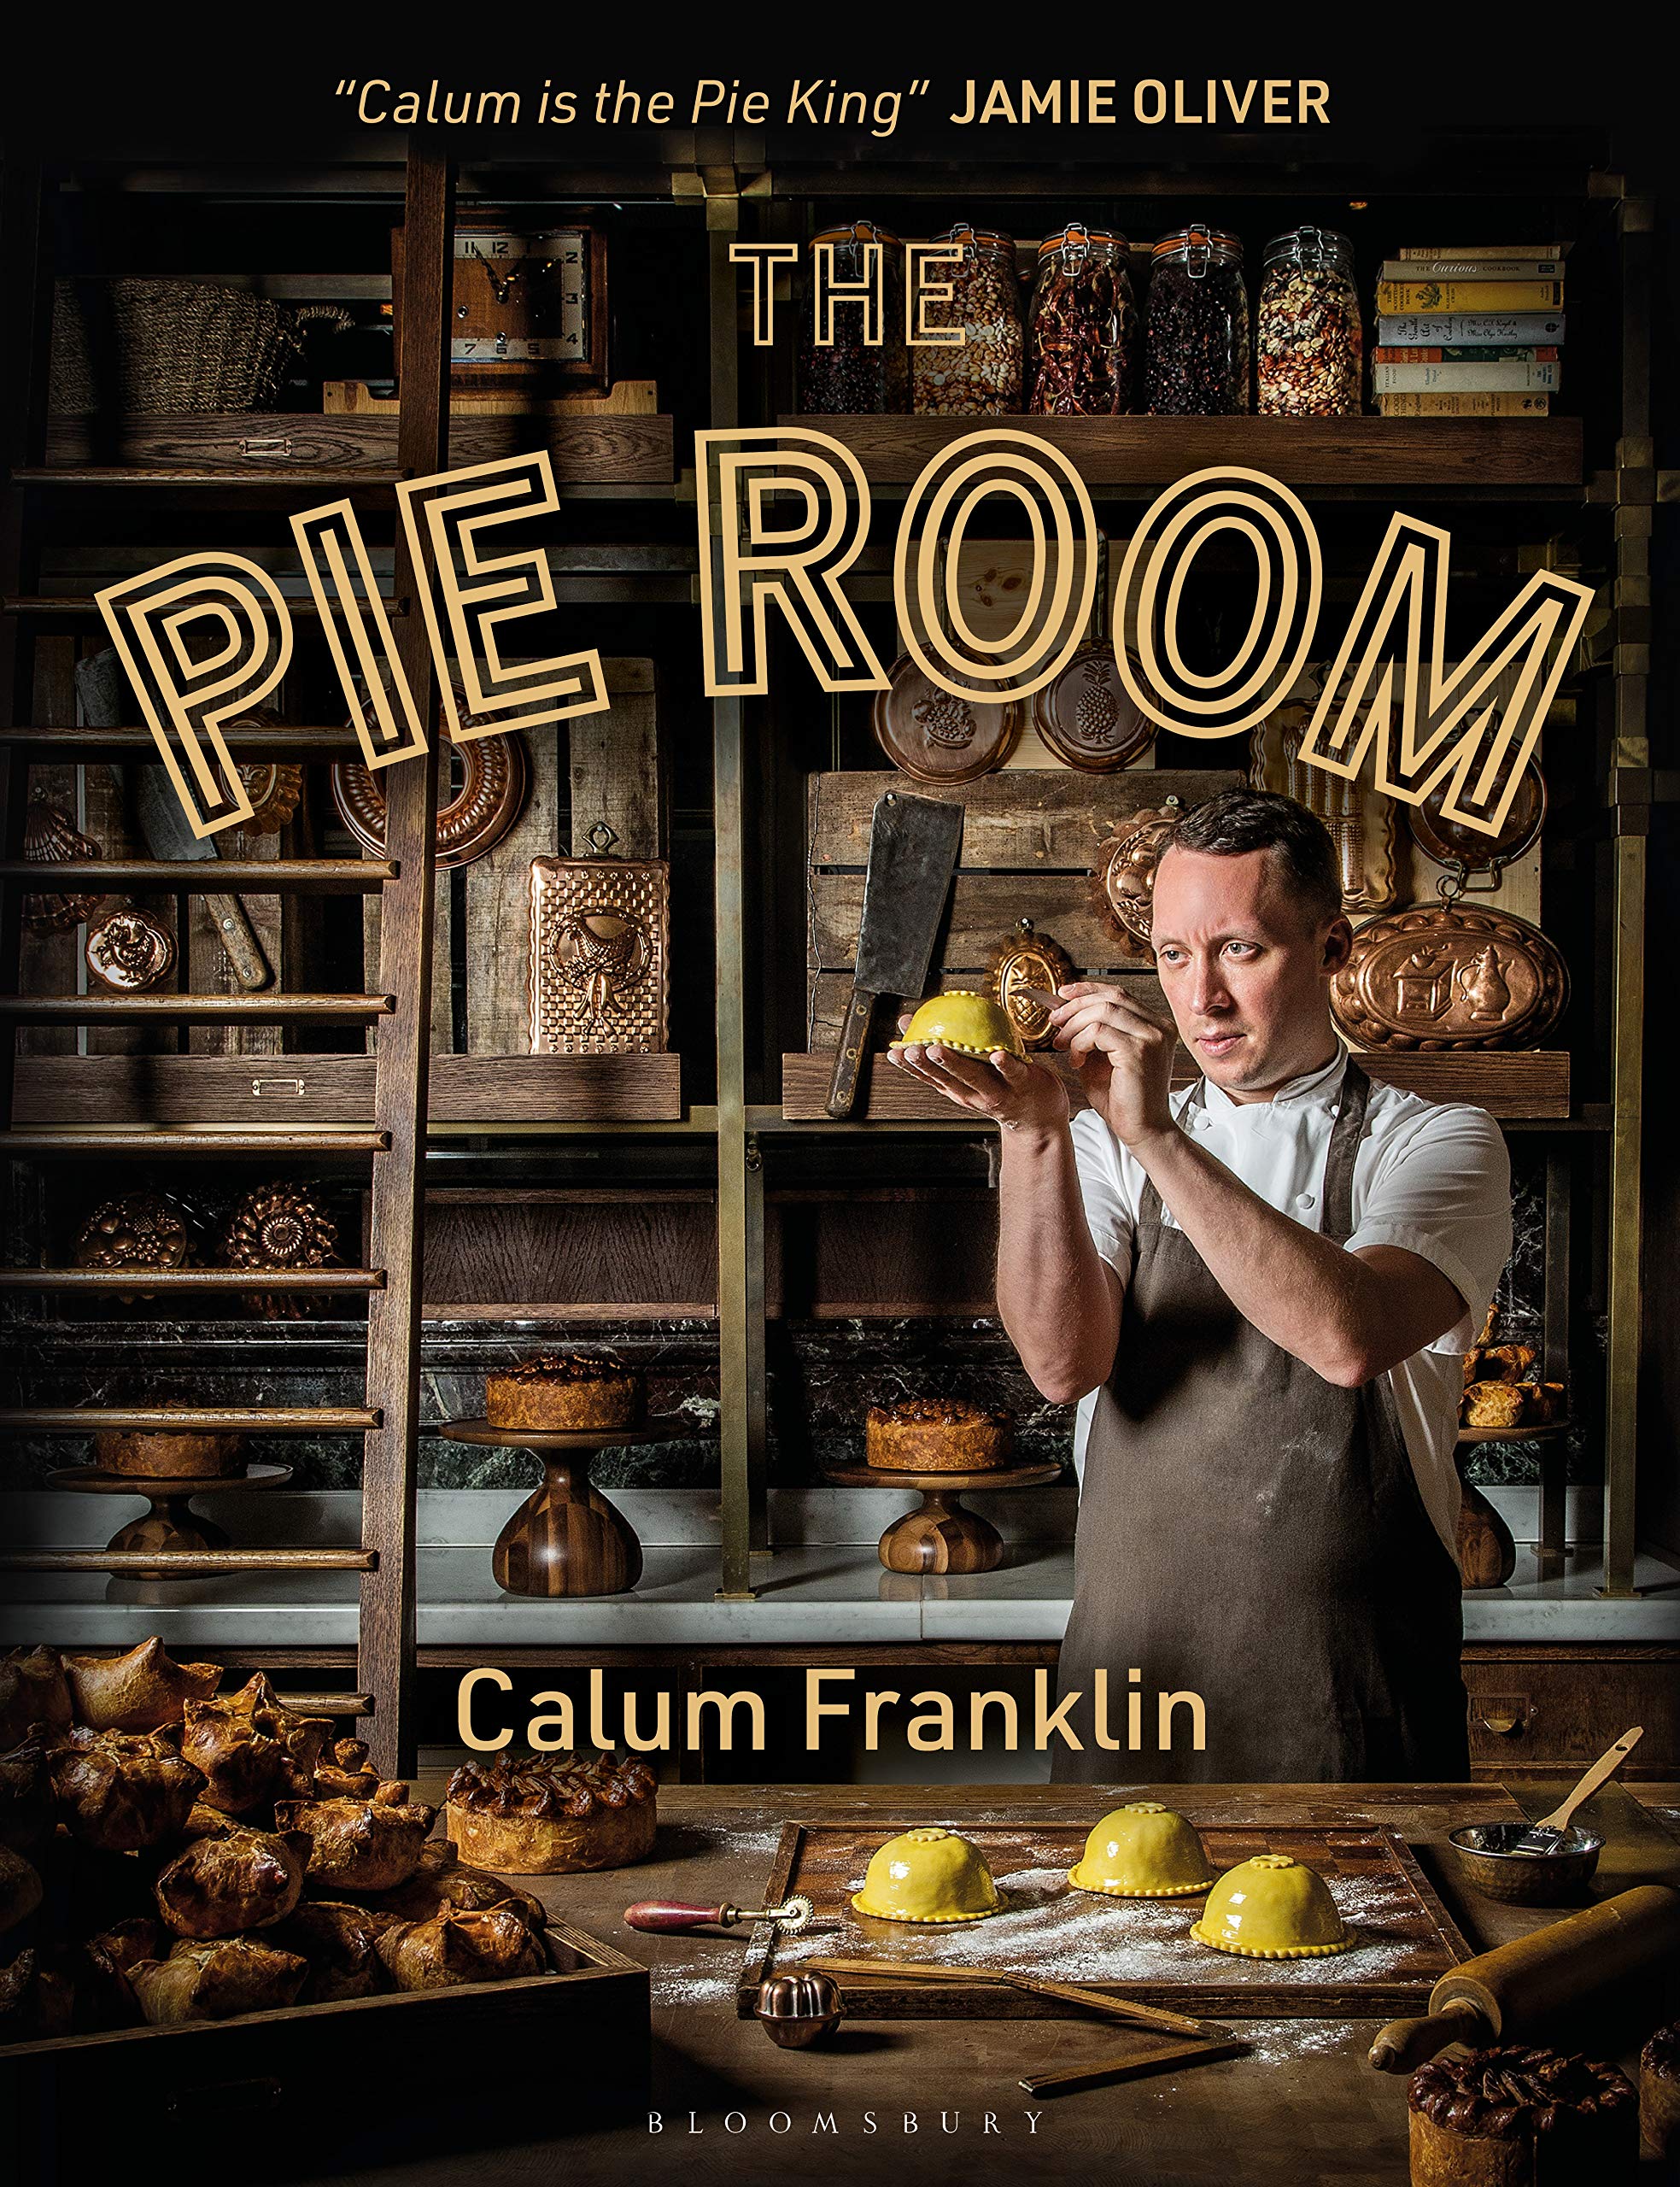 The Pie Room (Calum Franklin)